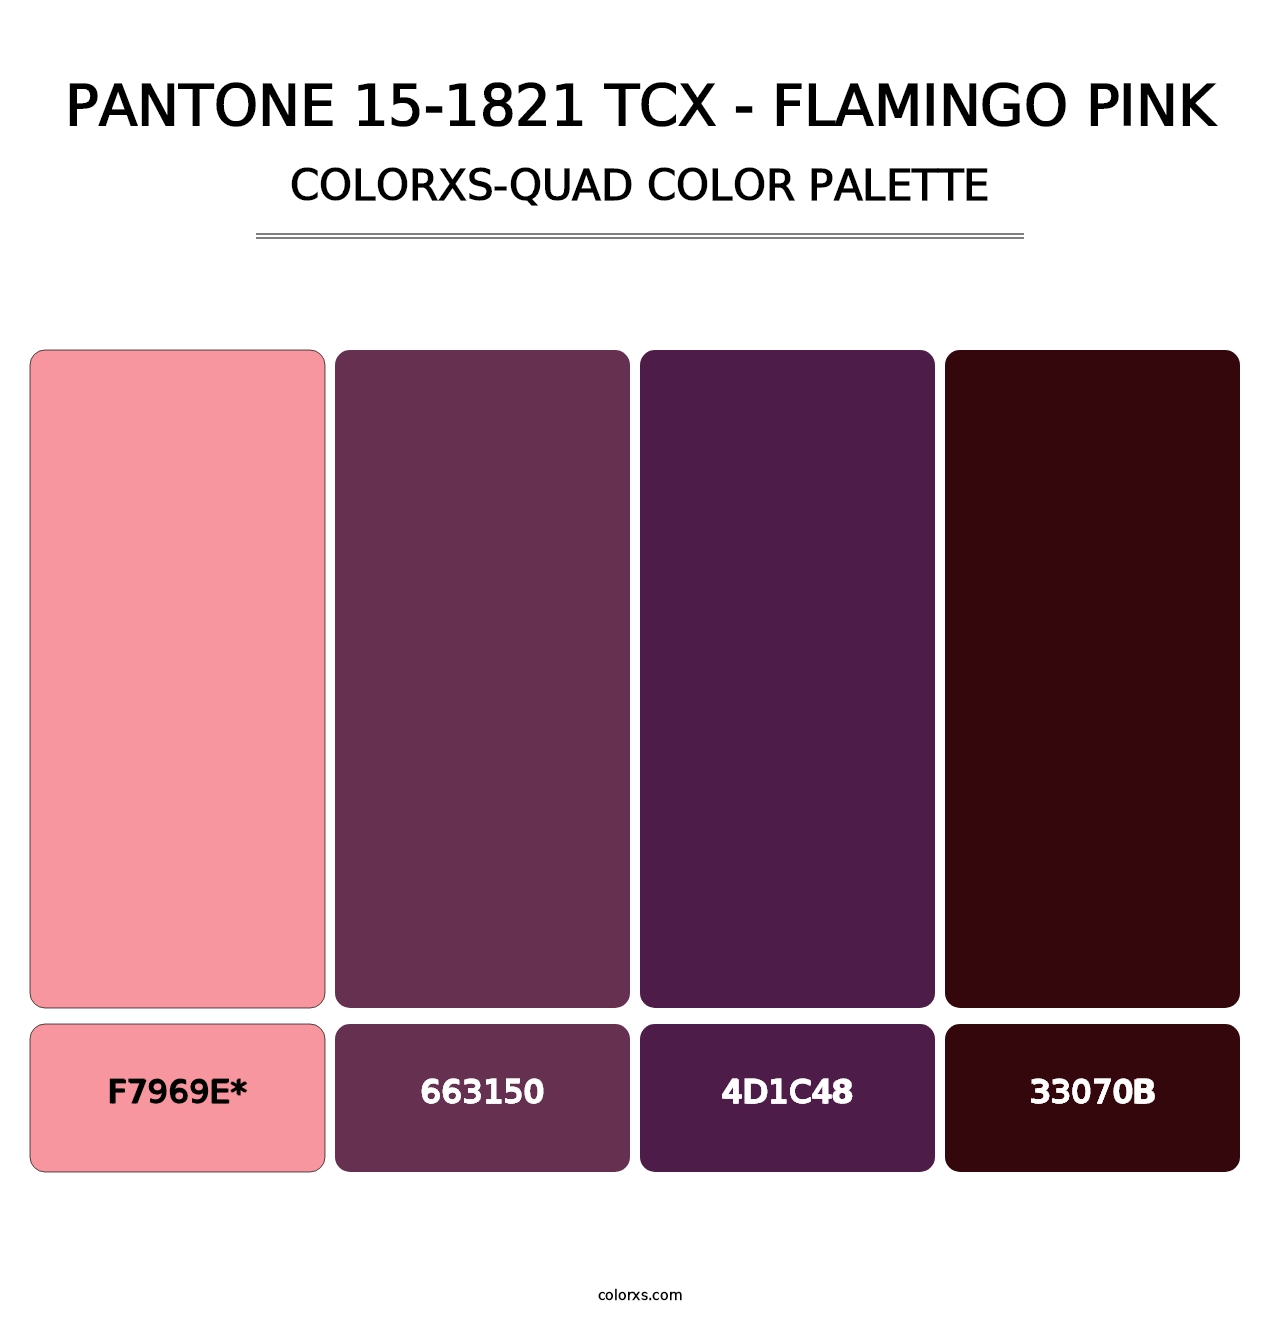 PANTONE 15-1821 TCX - Flamingo Pink - Colorxs Quad Palette